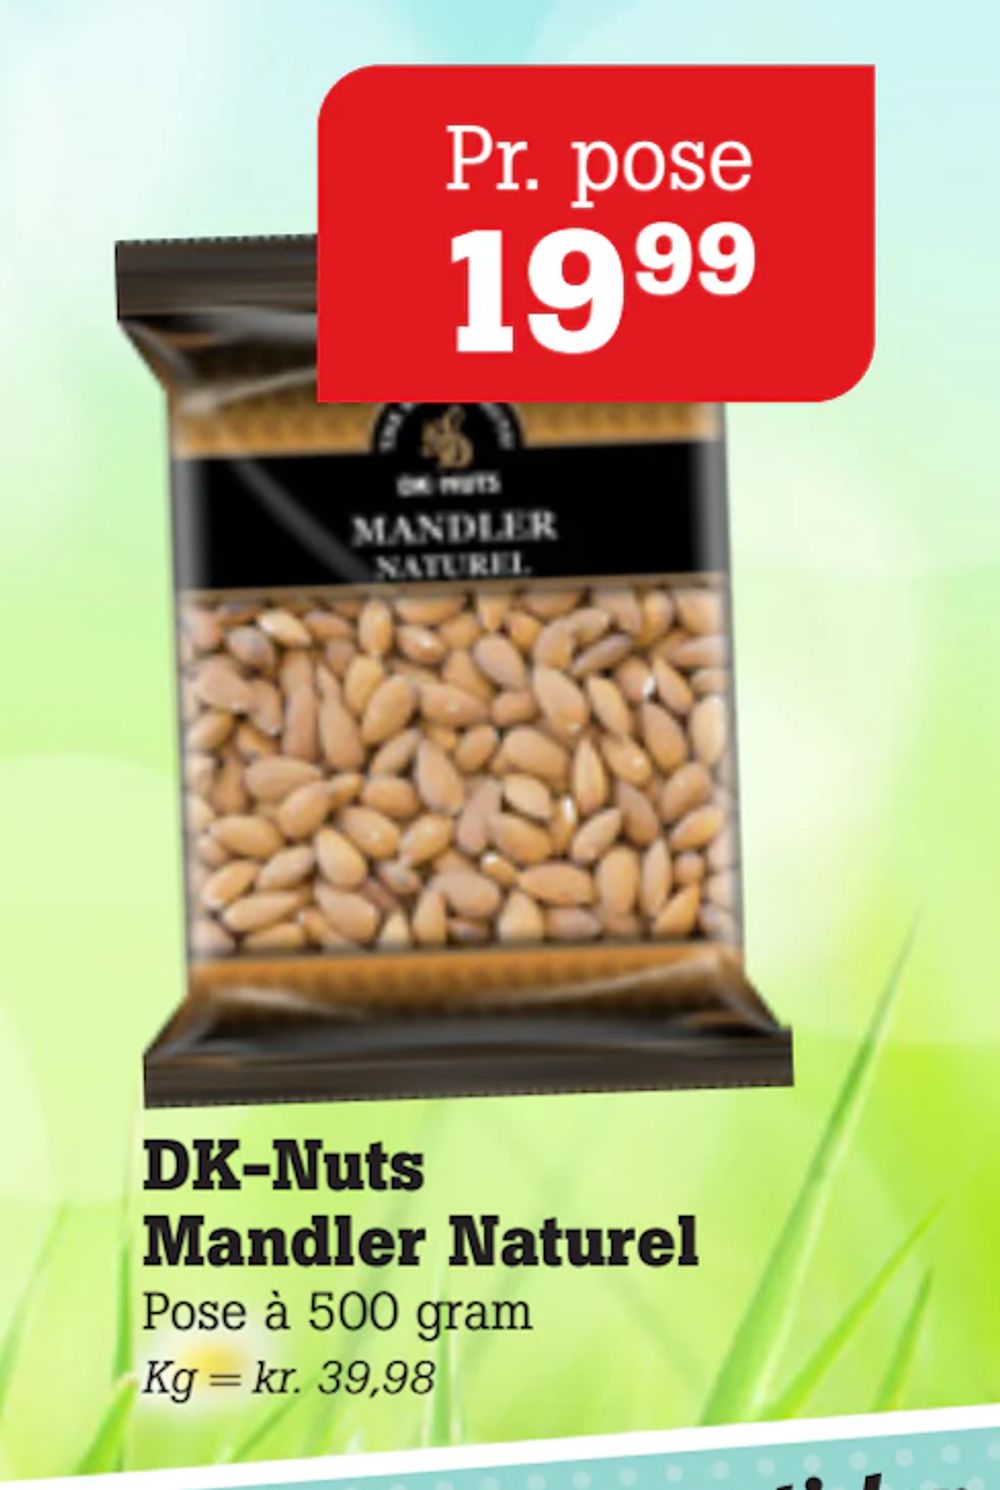 Tilbud på DK-Nuts Mandler Naturel fra Poetzsch Padborg til 19,99 kr.